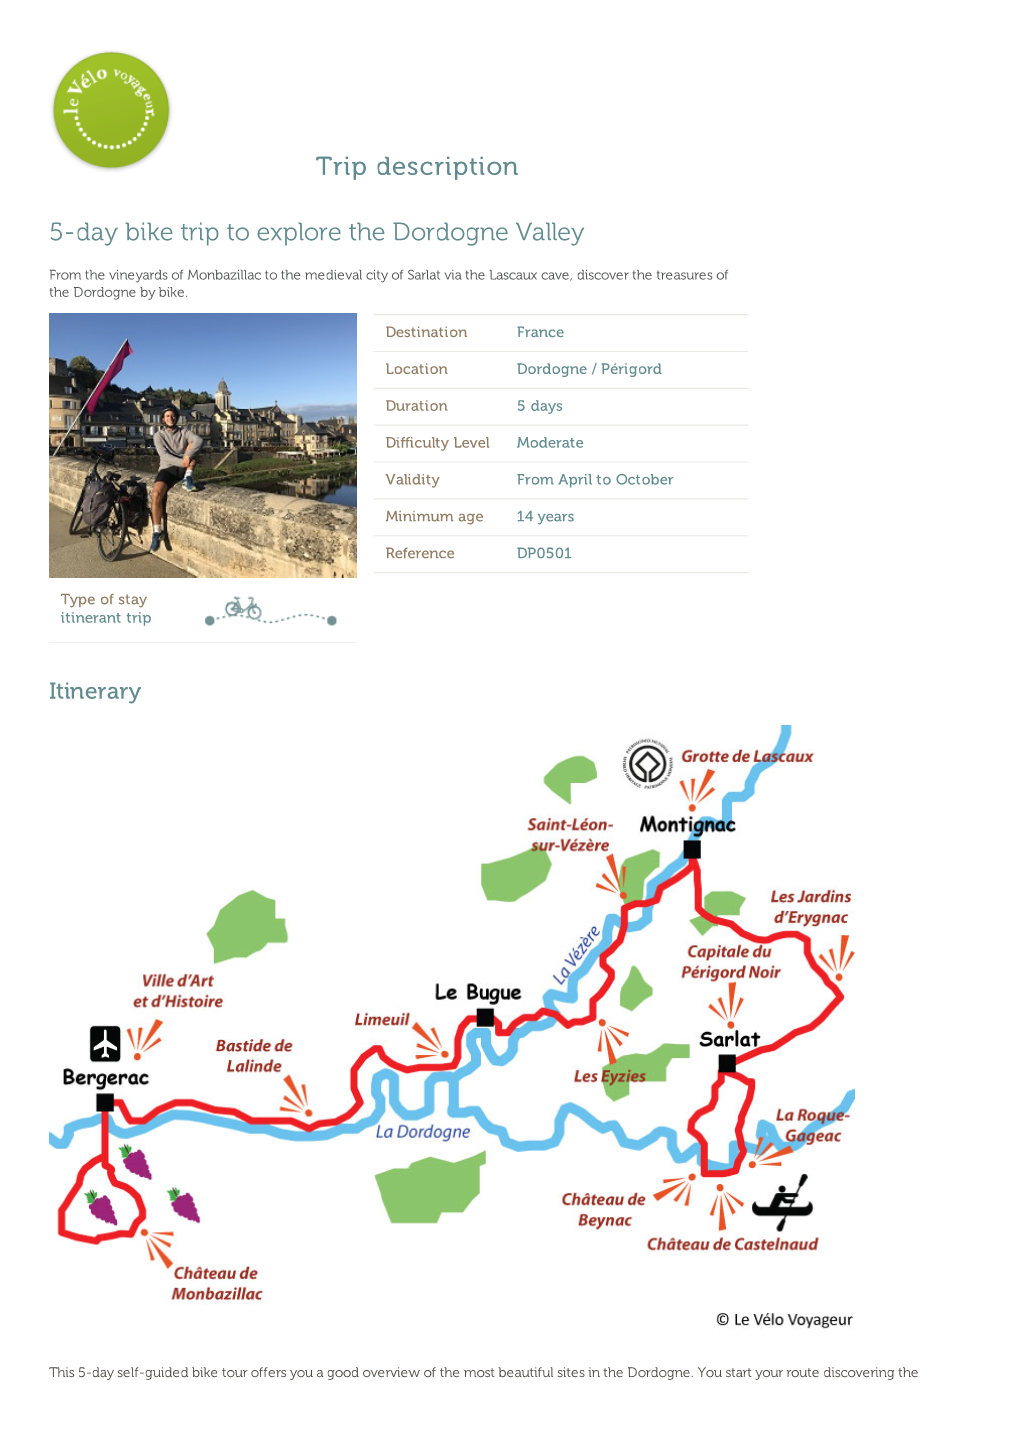 Trip Description 5-Day Bike Trip to Explore the Dordogne Valley